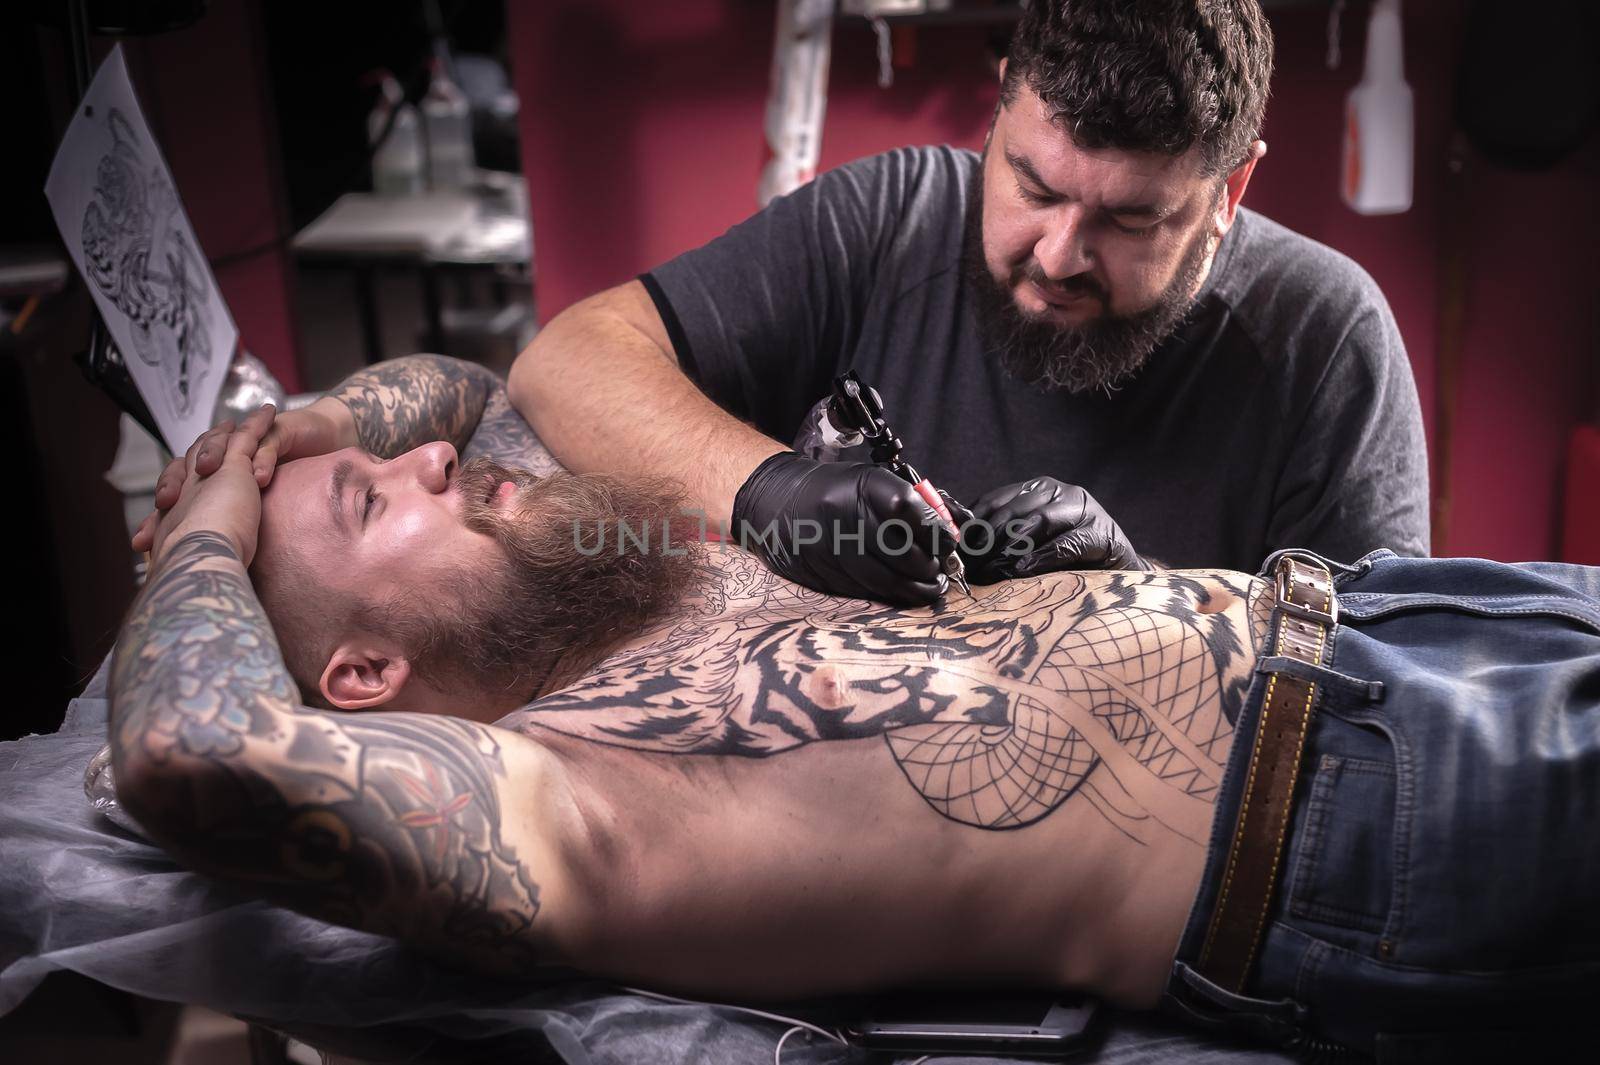 Tattoo specialist posing in tattoo studio.